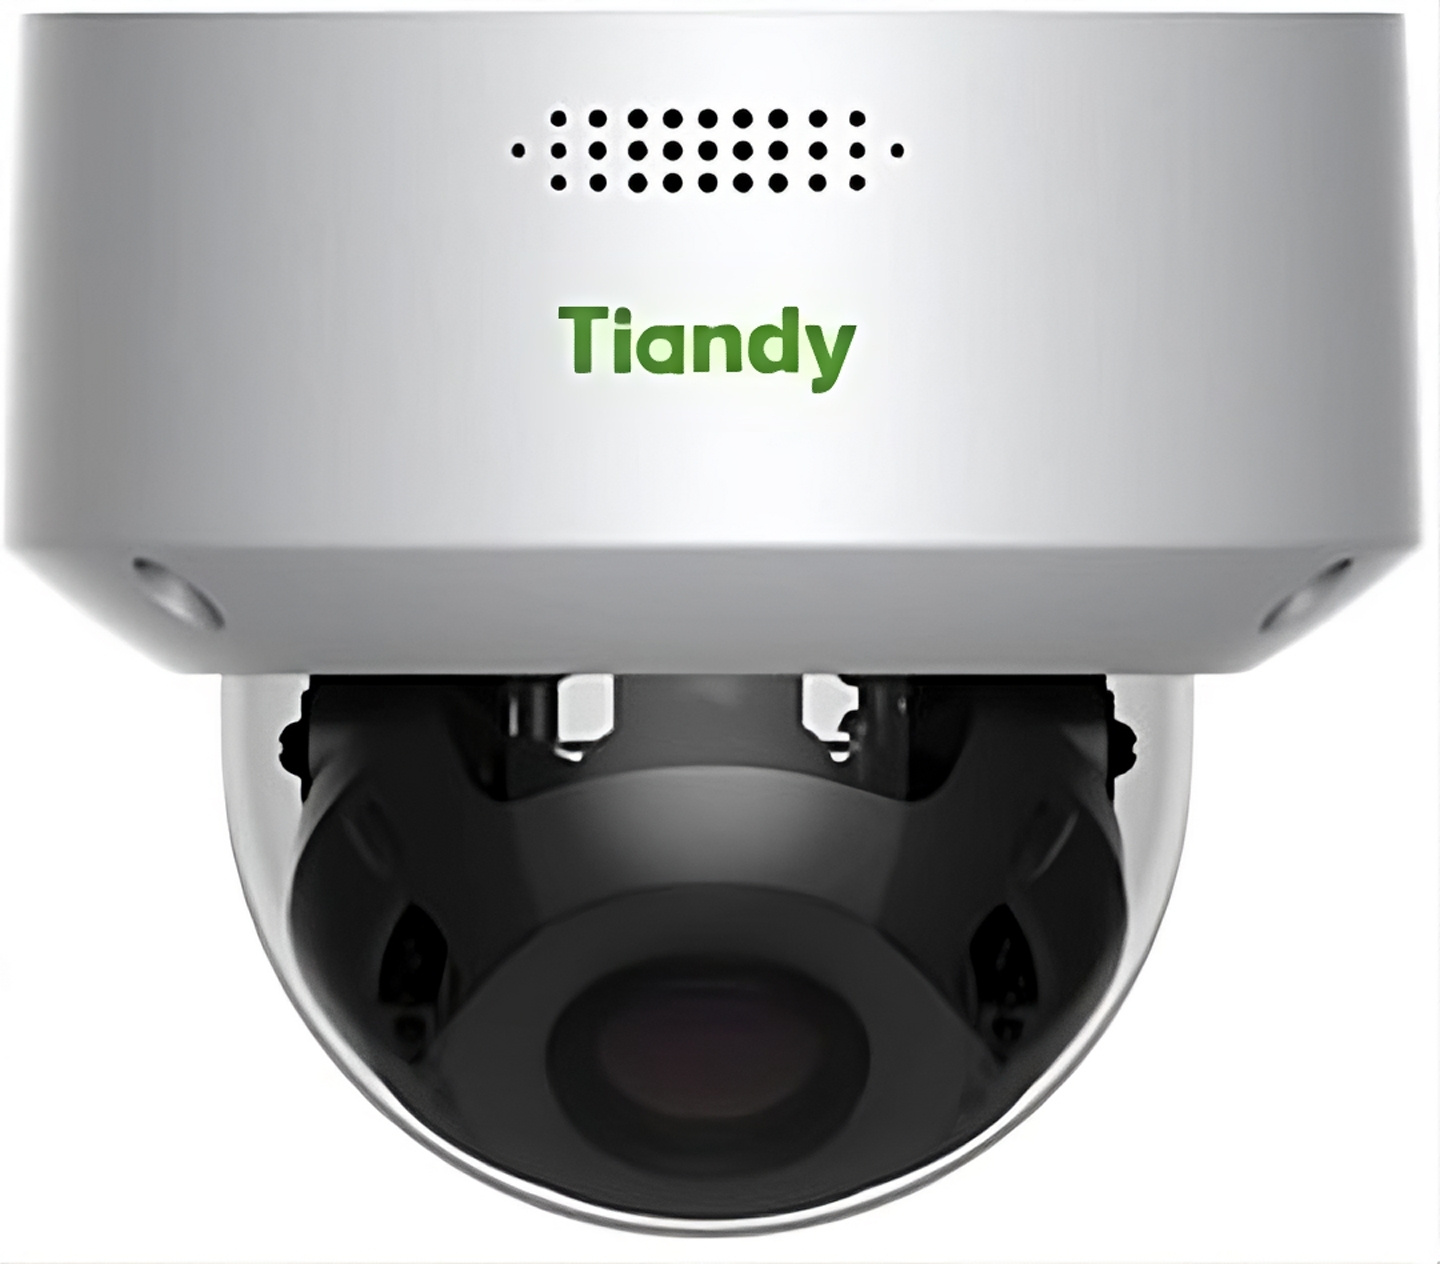 Камера видеонаблюдения IP Tiandy TC-C35MS I5/A/E/Y/M/H/2.7-13.5mm/V4.0 2.7-13.5мм цв. корп.:белый (TC-C35MS I5/A/E/Y/M/H/V4.0)